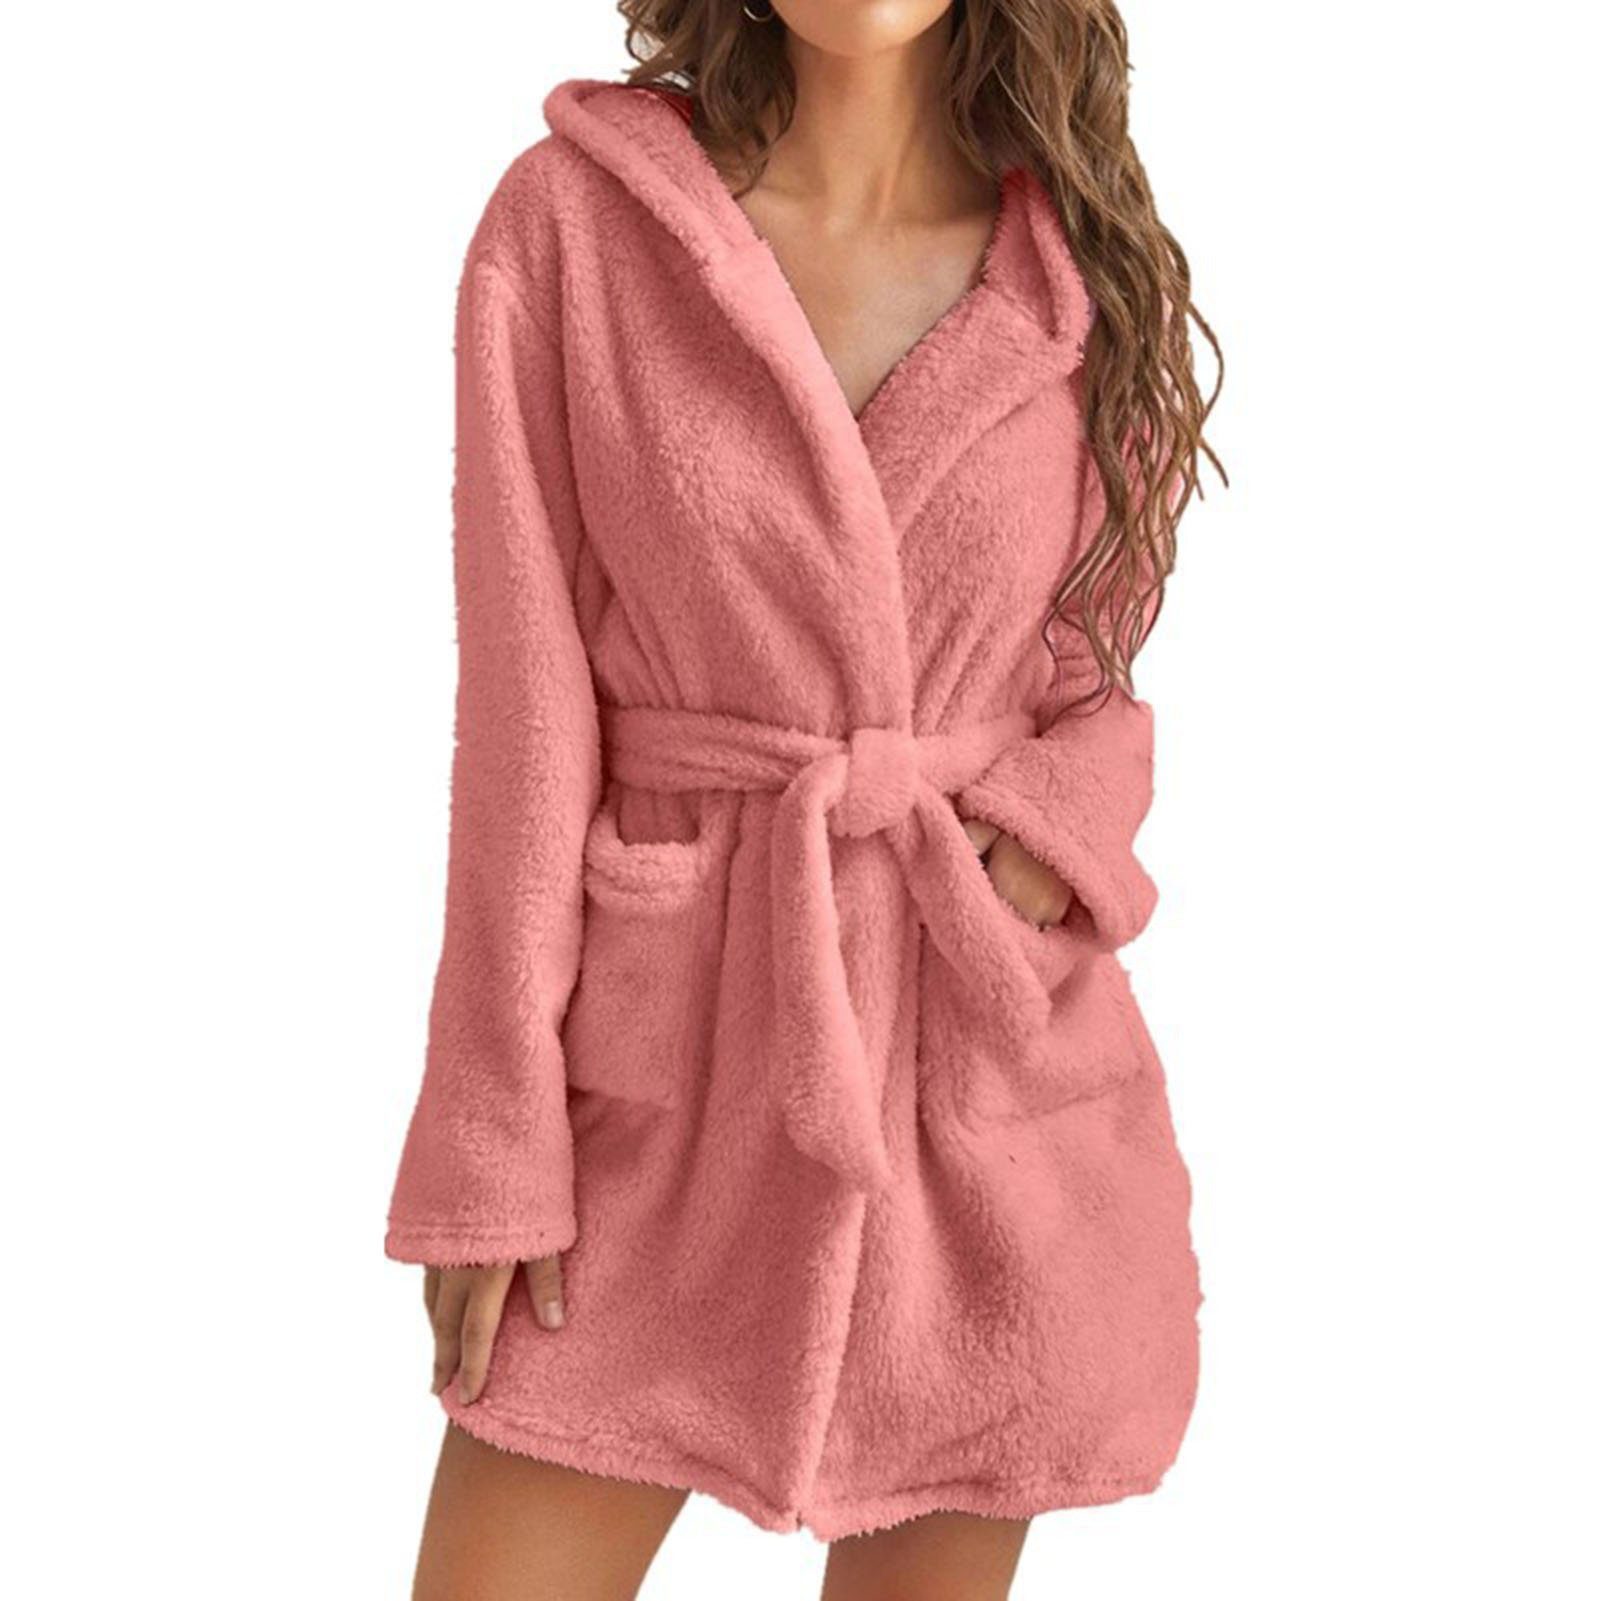 Blusmart Damenbademantel Damen-Handtuch-Bademantel Mit 2 Taschen, Atmungsaktiv, Bequem, Für pink